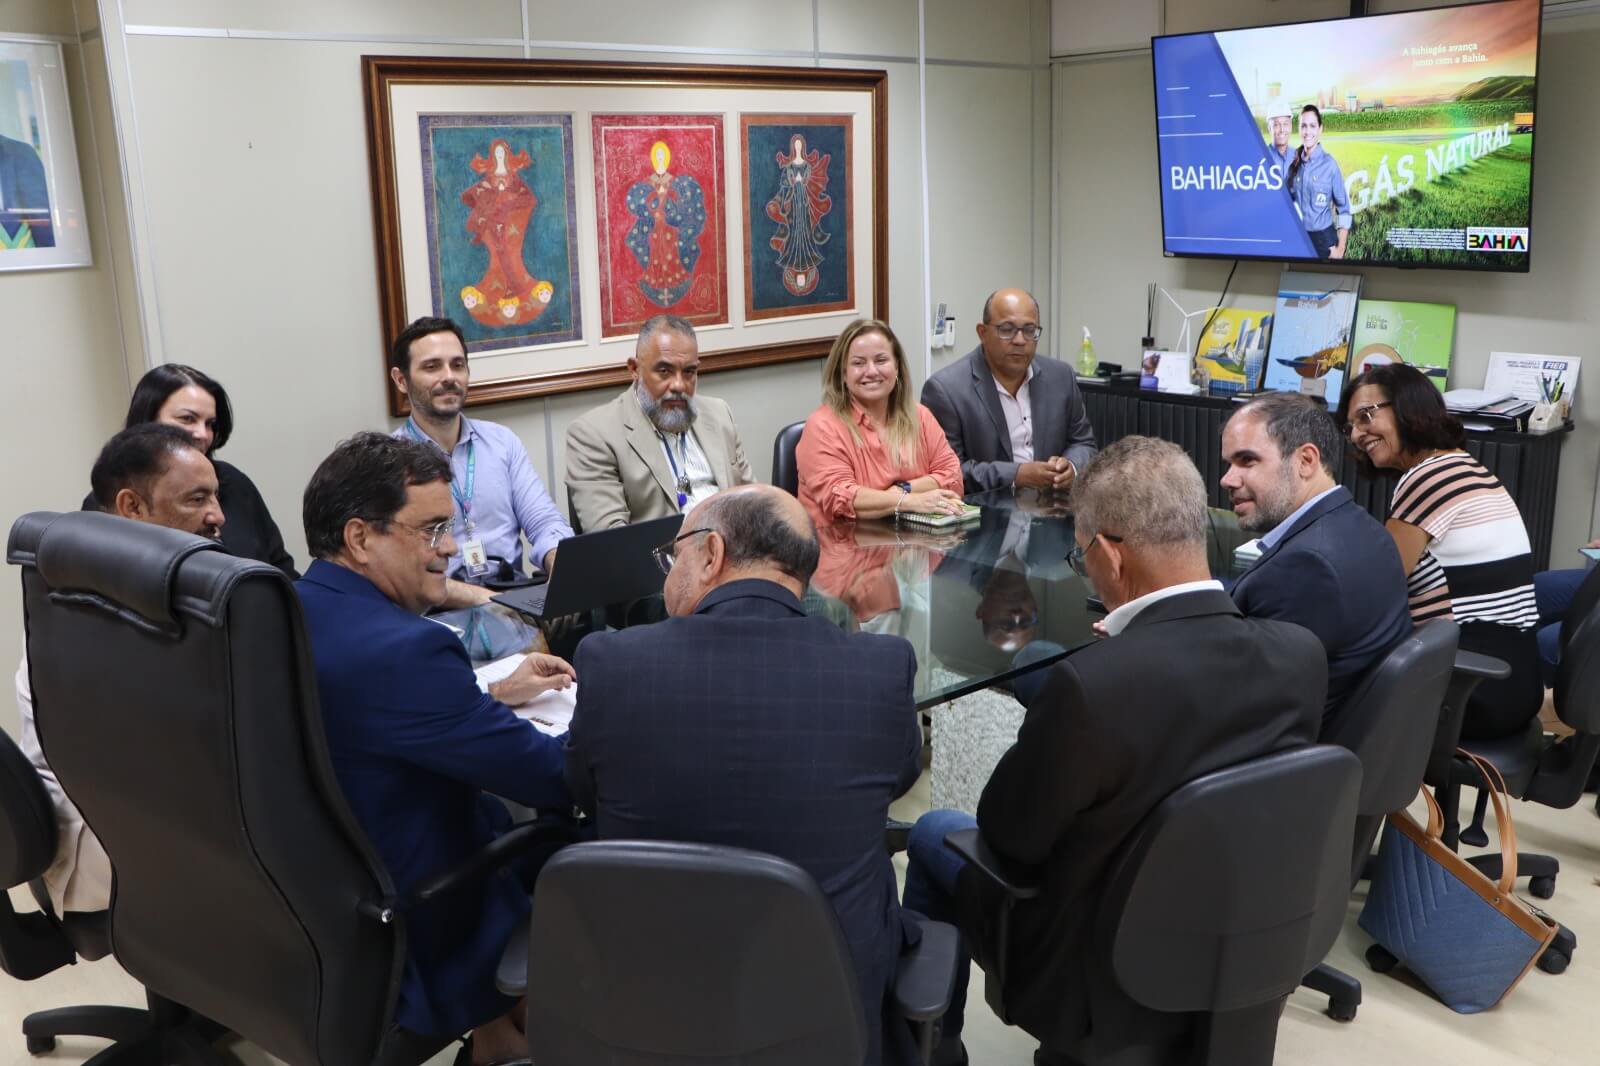 Acordo entre SDE e Bahiagás fortalecerá interiorização da distribuição de gás no Estado 5